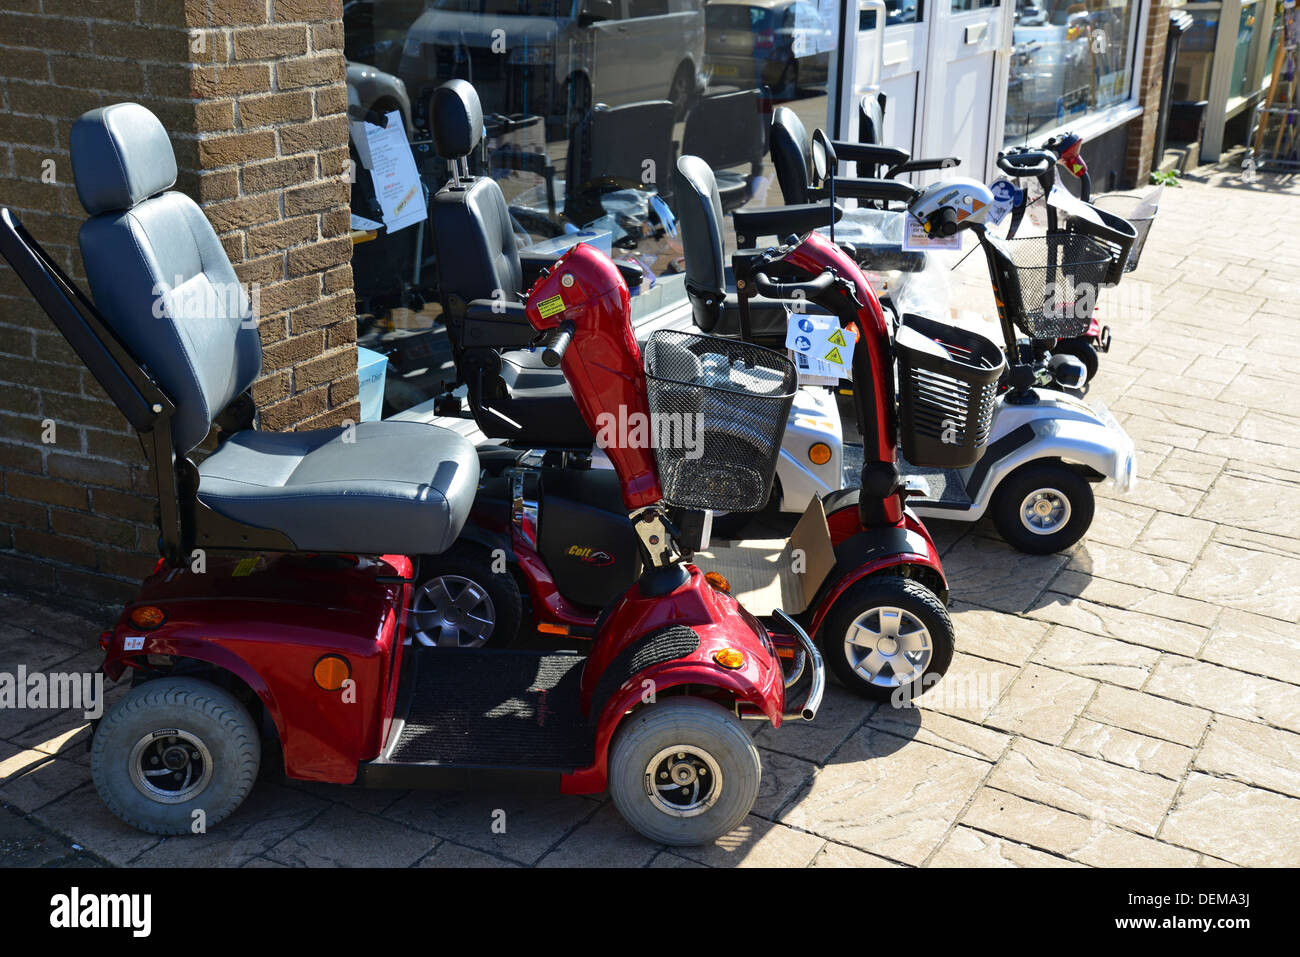 Les scooters de mobilité pour la vente, Hunstanton, Norfolk, Angleterre, Royaume-Uni Banque D'Images